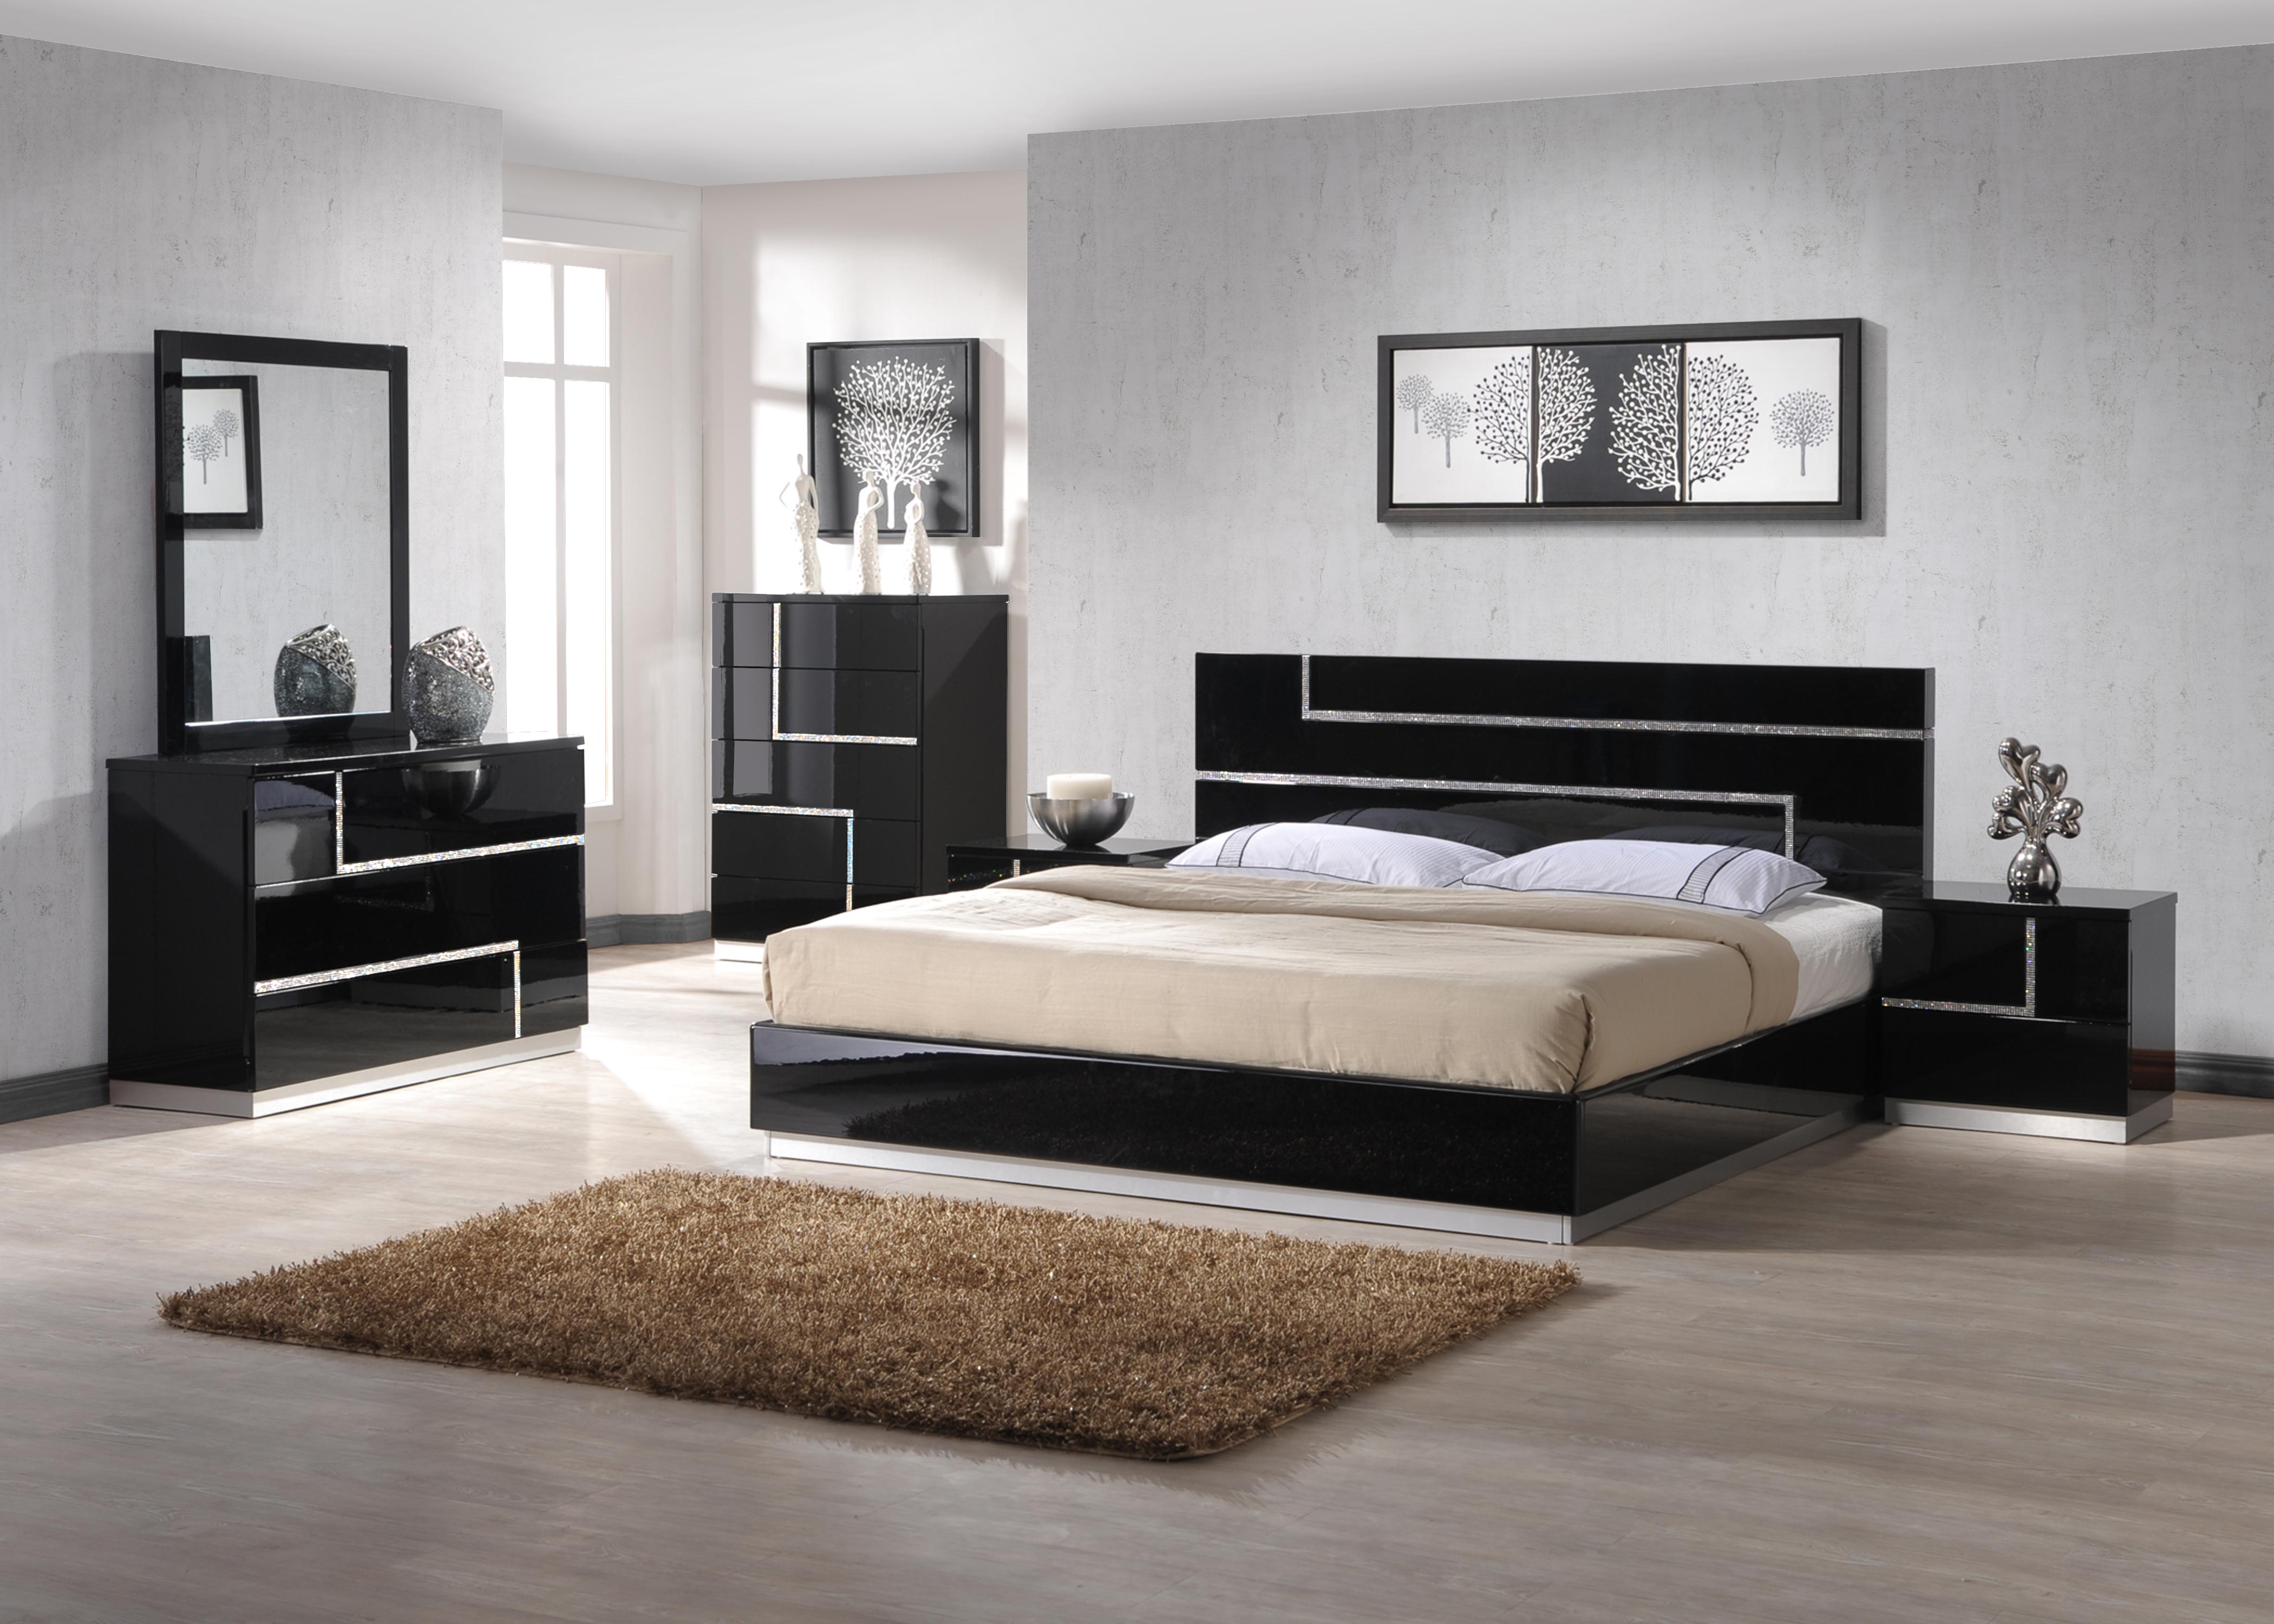 

    
Glossy Black w/Crystals Inlay Lowrey Platform QUEEN Bedroom Set 5P Contemporary
